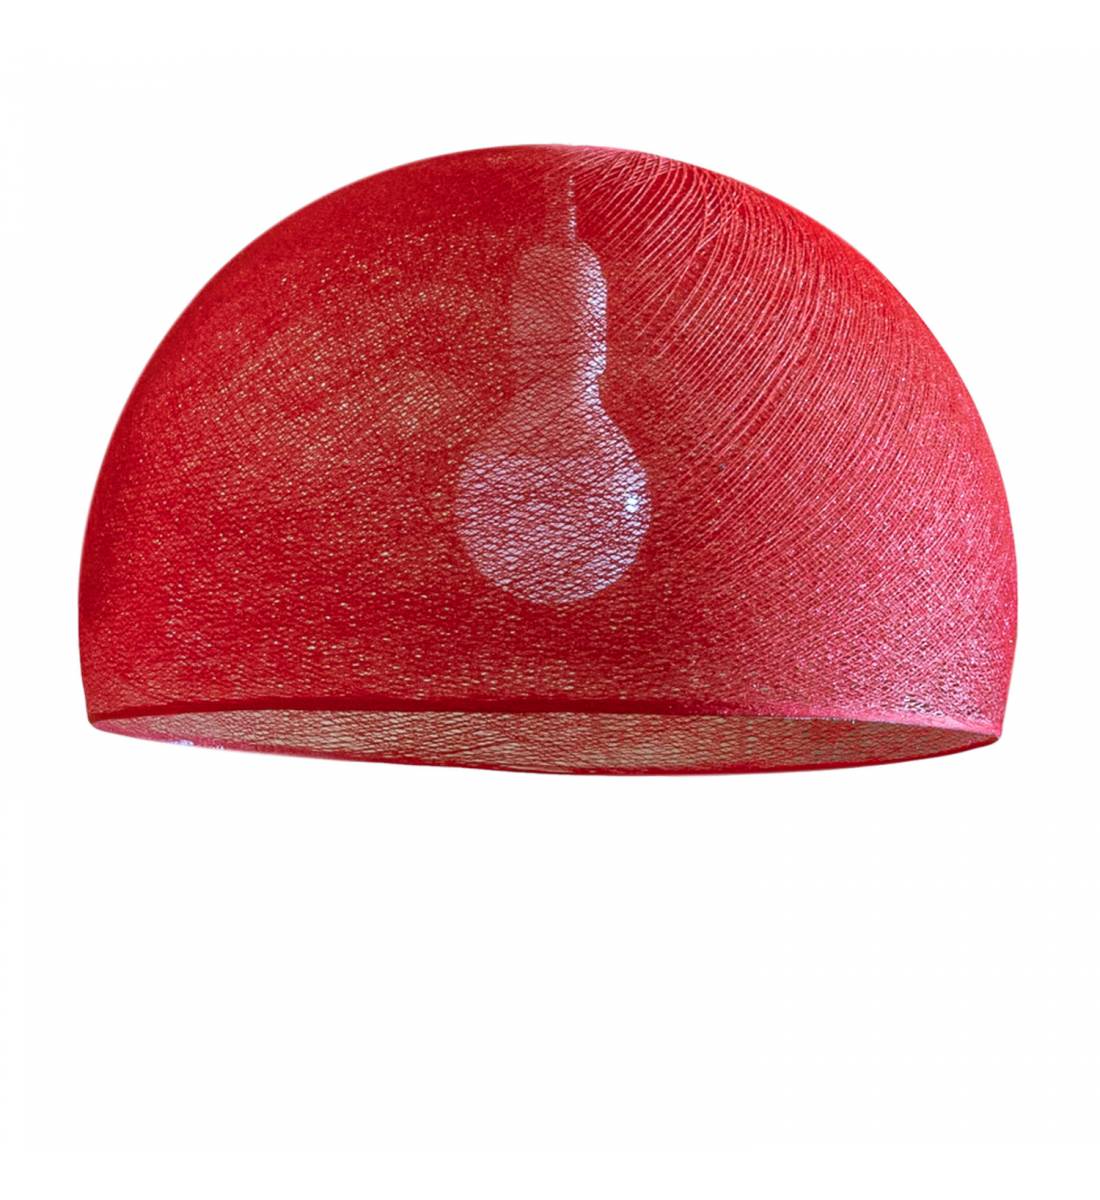 Dome Red - New dome lampshades - La Case de Cousin Paul